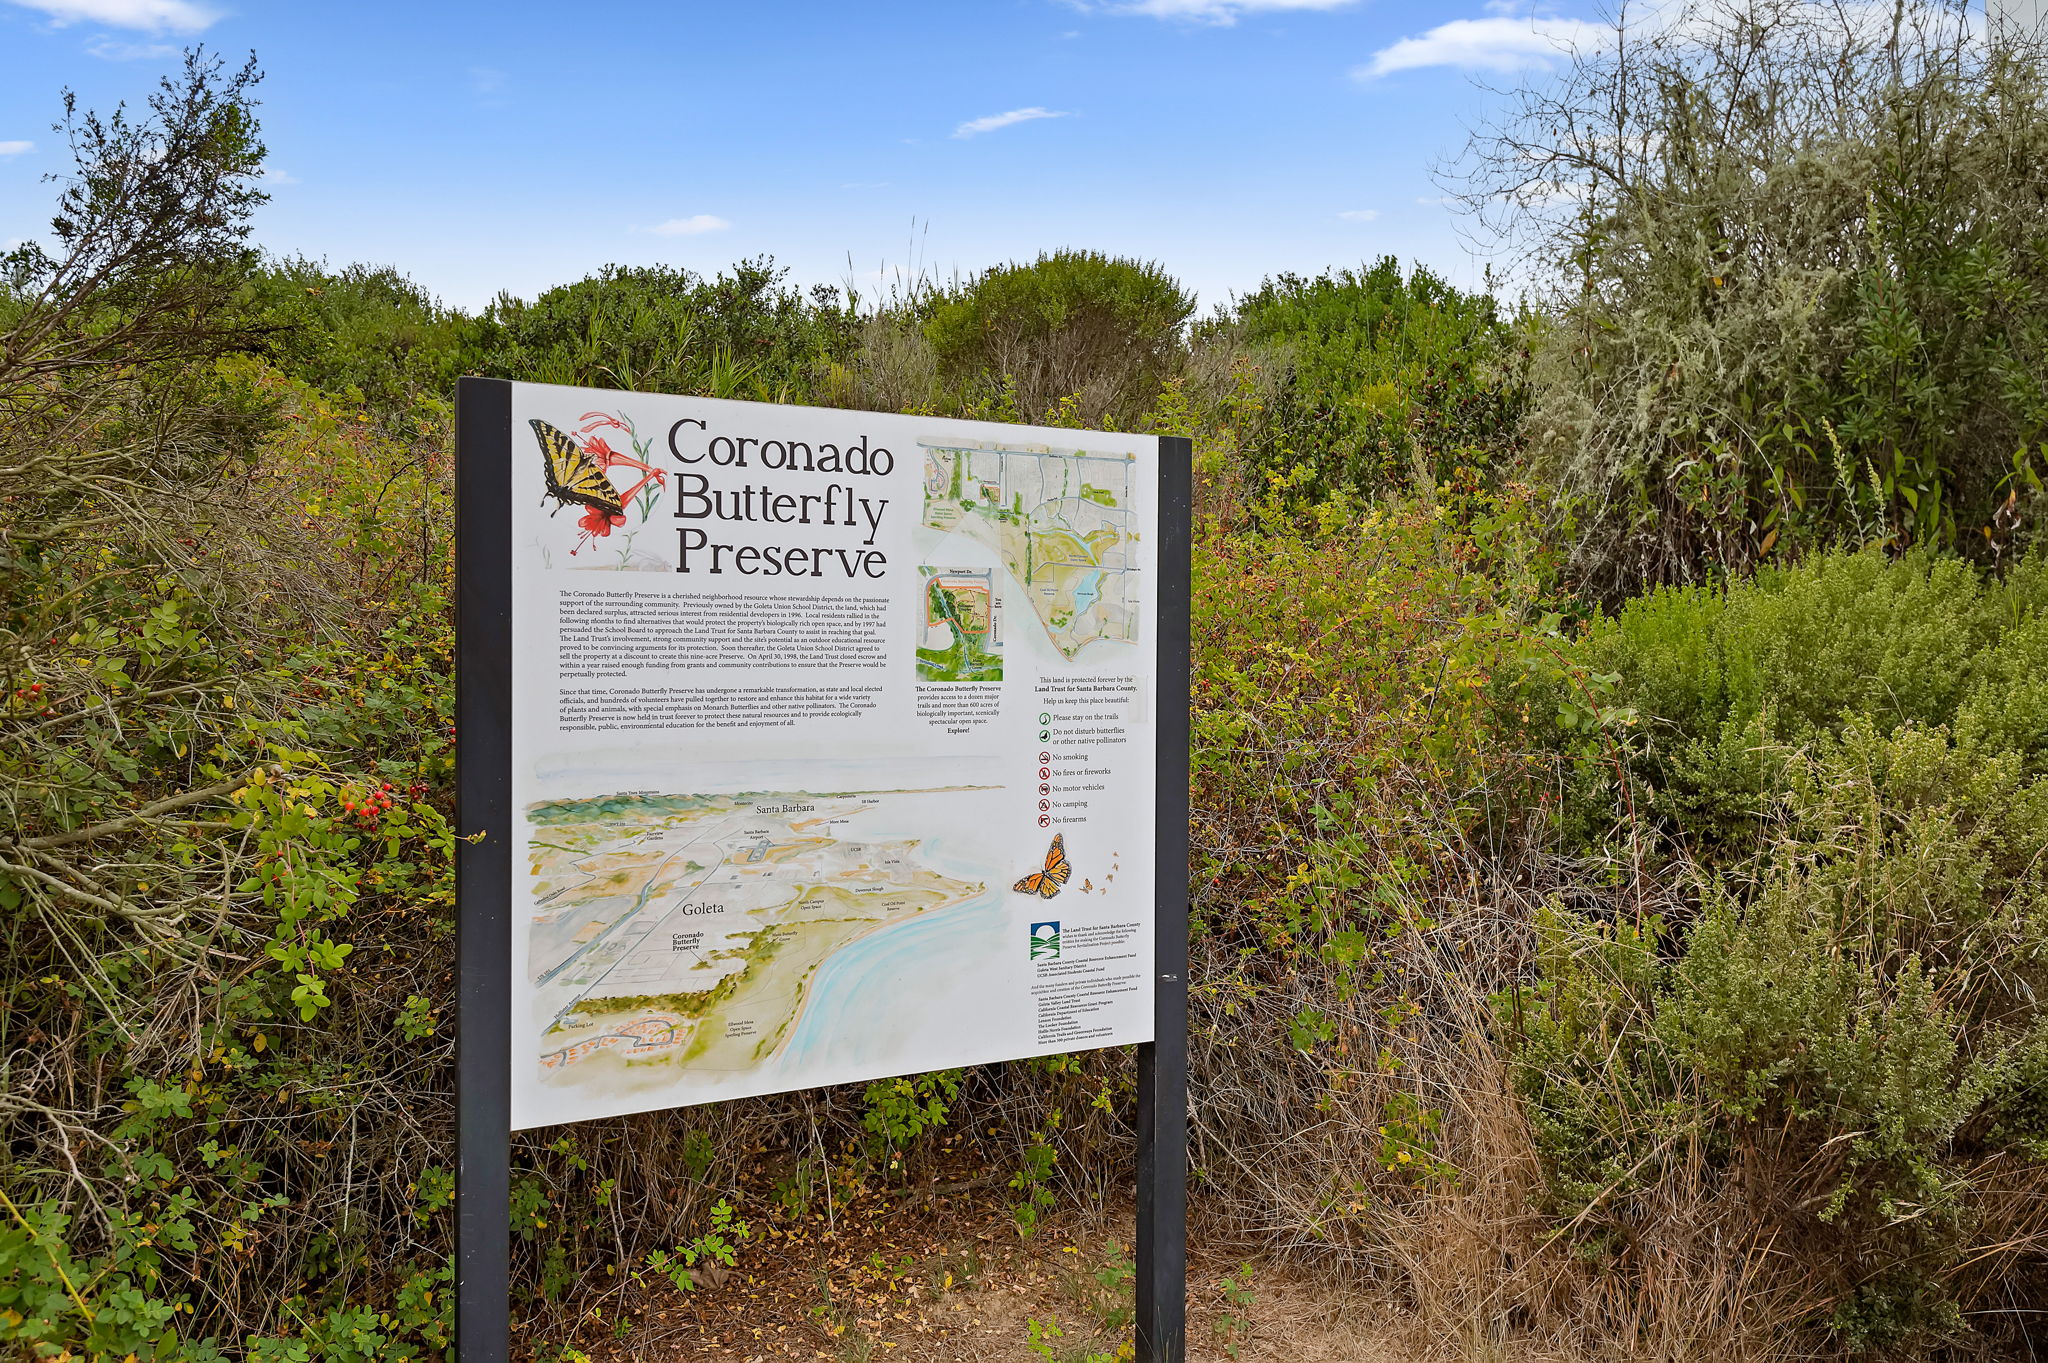 34 - Coronado Butterfly Reserve